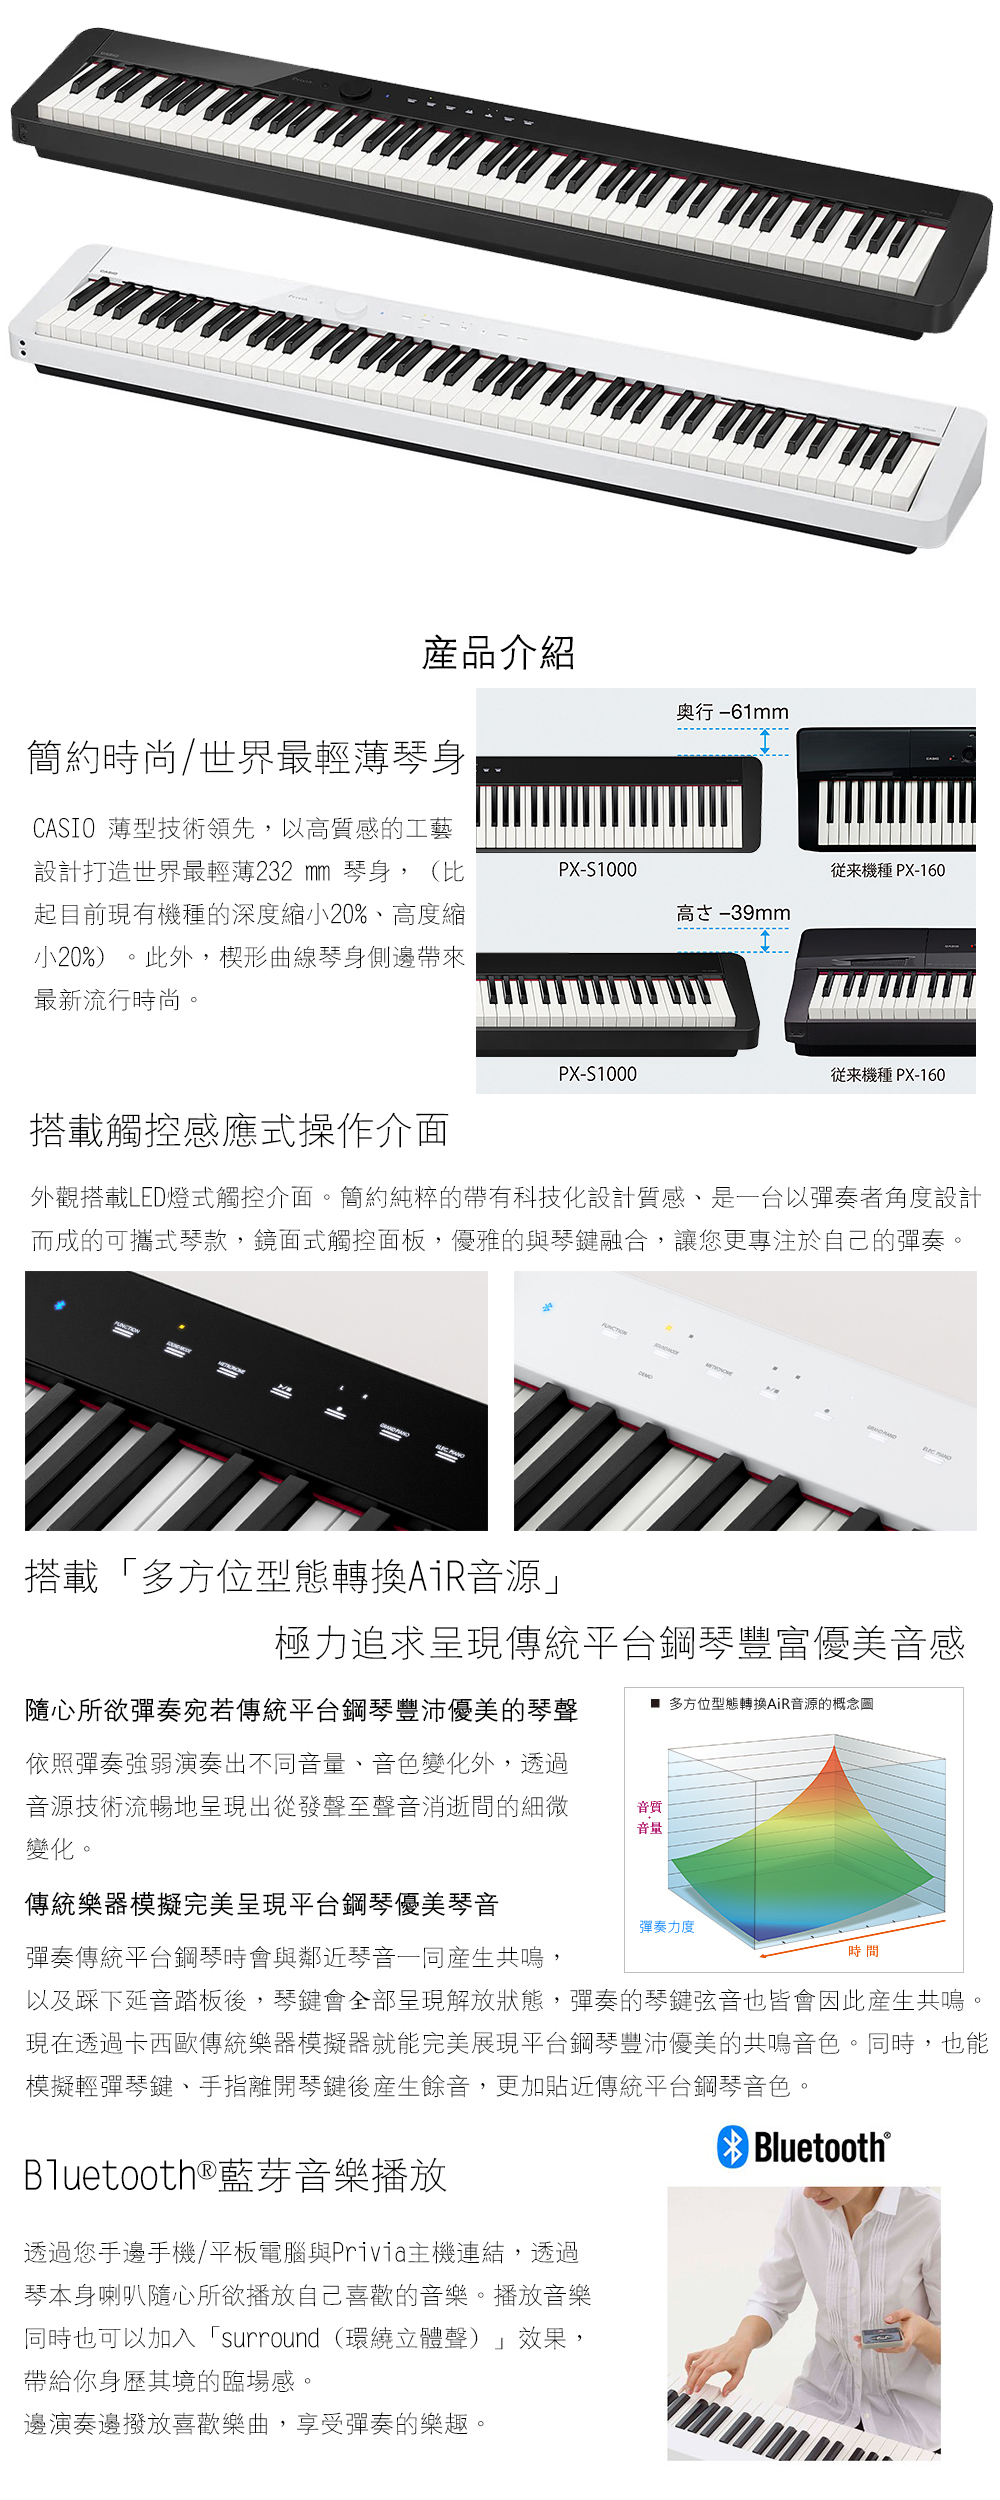 世界最輕薄琴身CASIO-PX-S1000舞台型電鋼琴